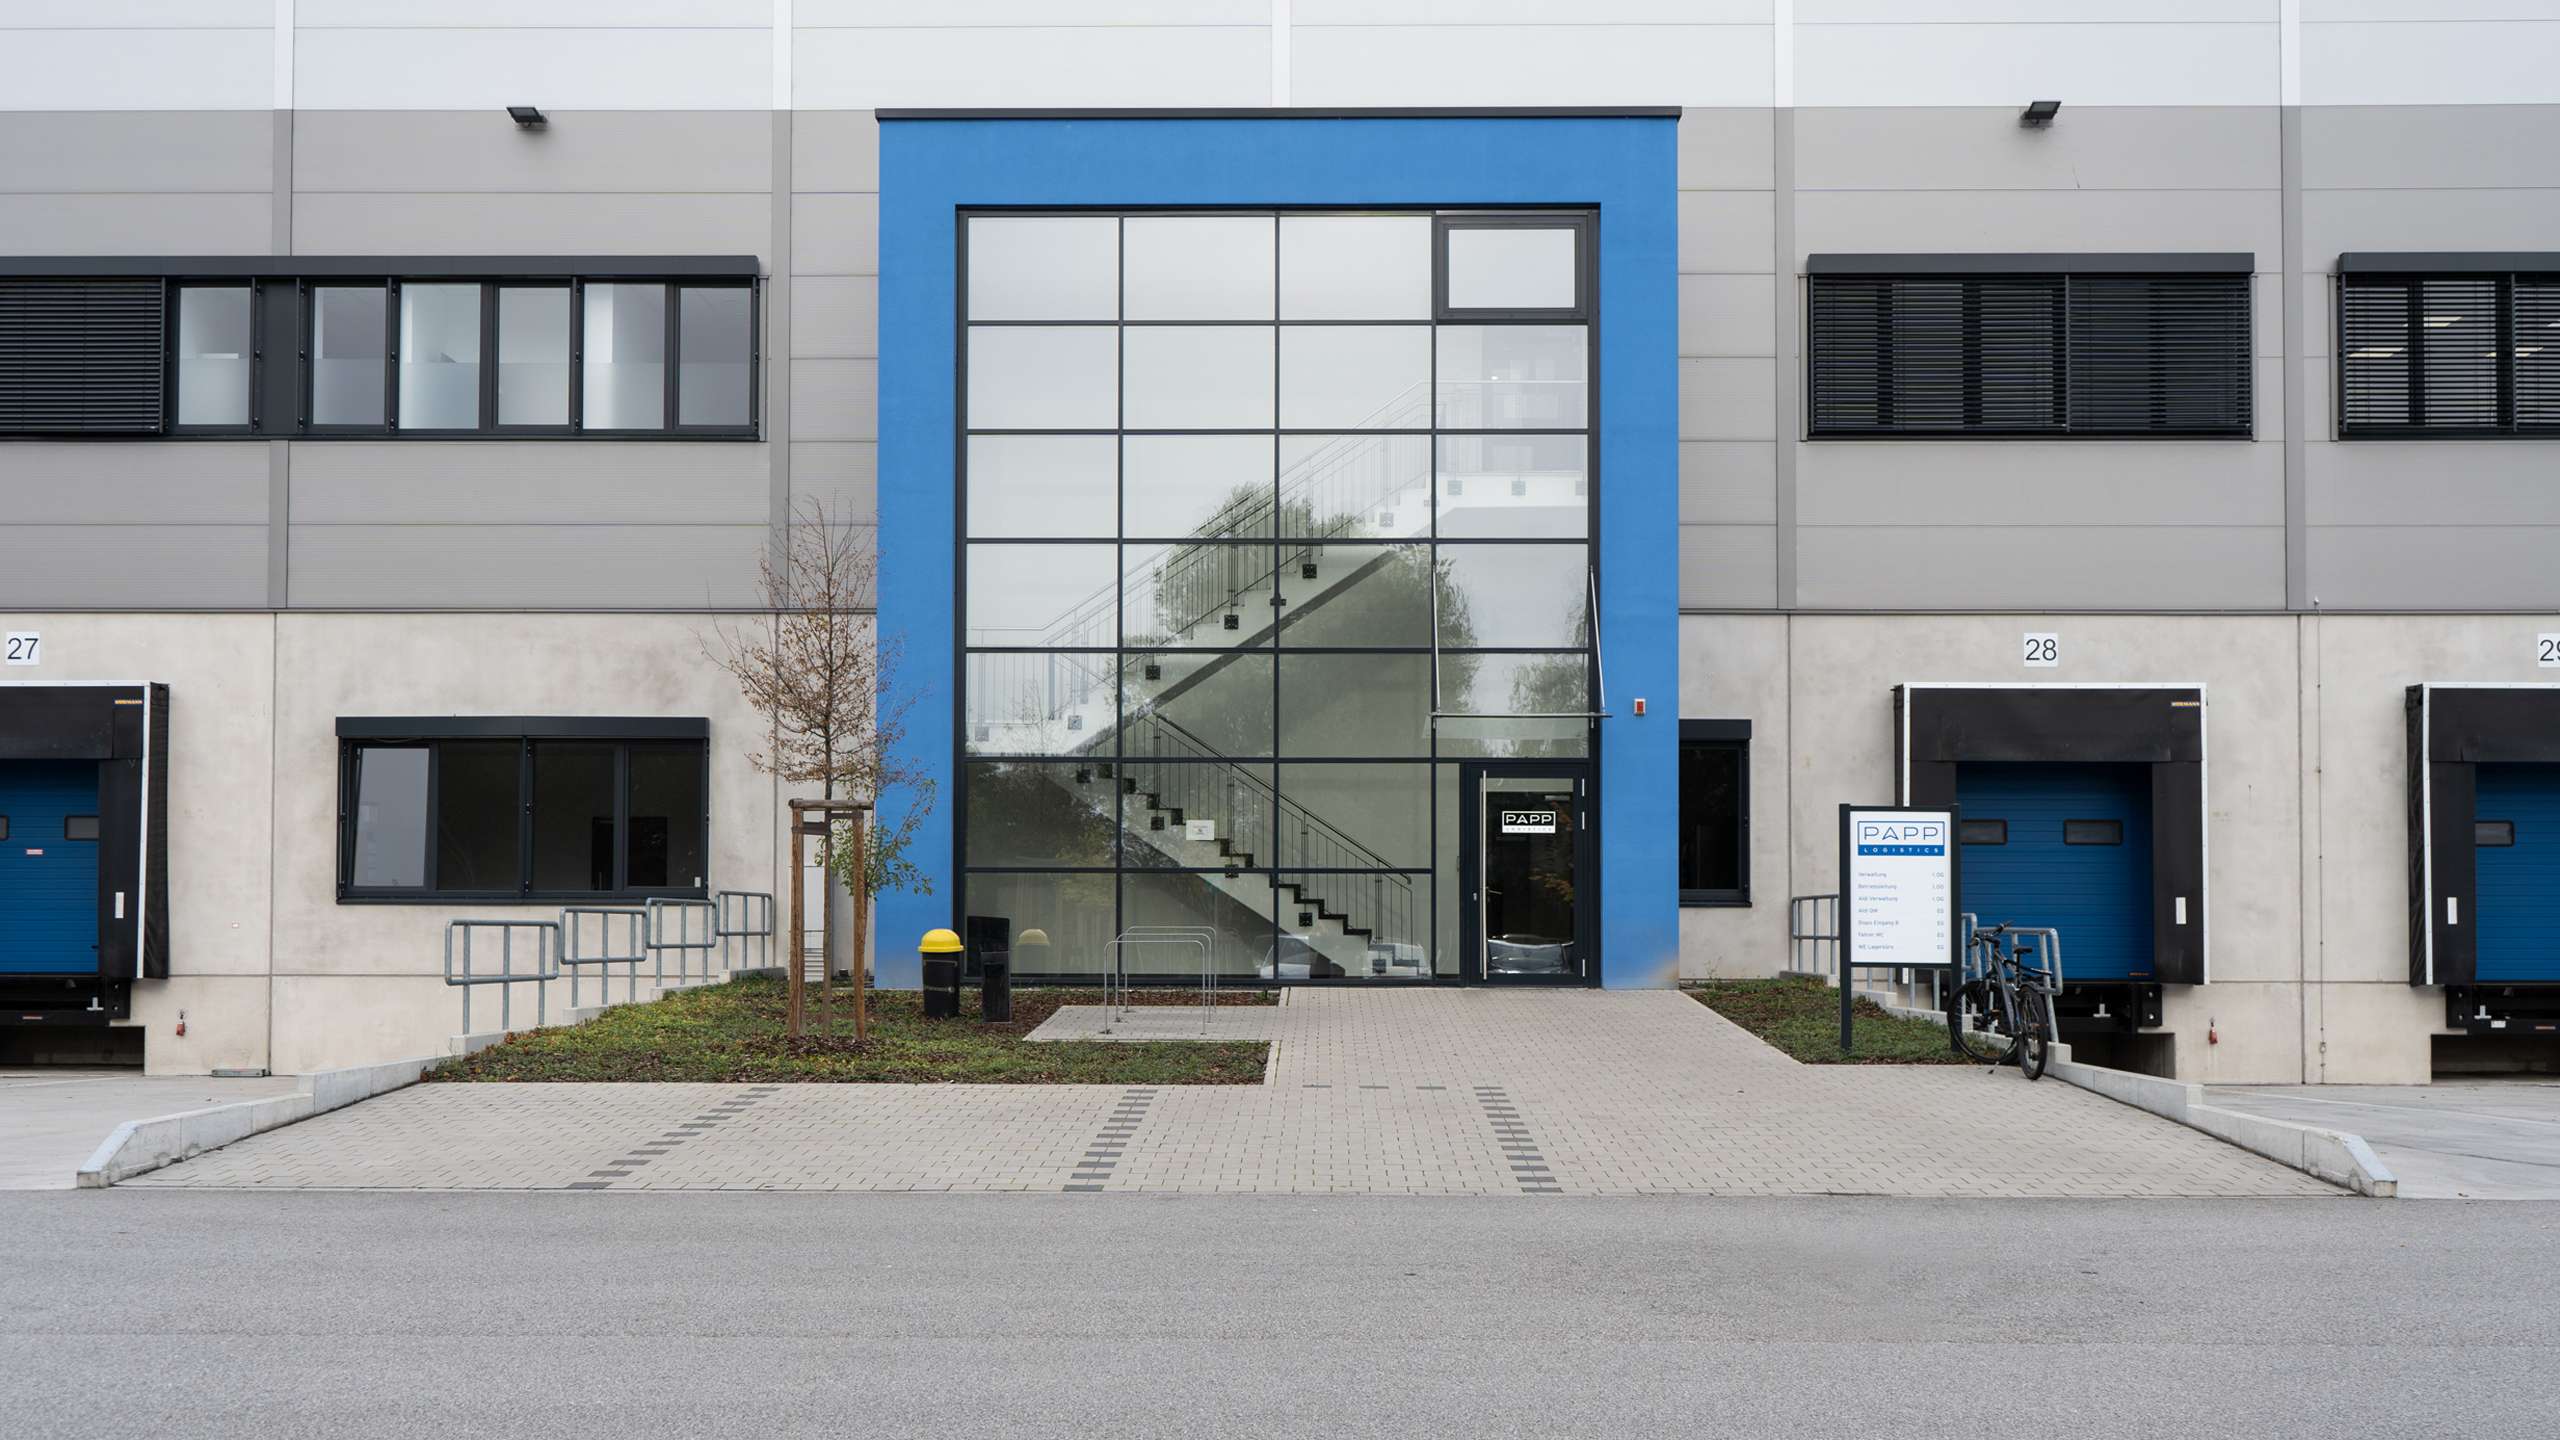 Ein Blick auf das Gebäude von PAPP Logistics in Ginsheim-Gustavsburg. Das Treppenhaus befindet sich hinter der Fensterfront des blauen Gebäudeteils.